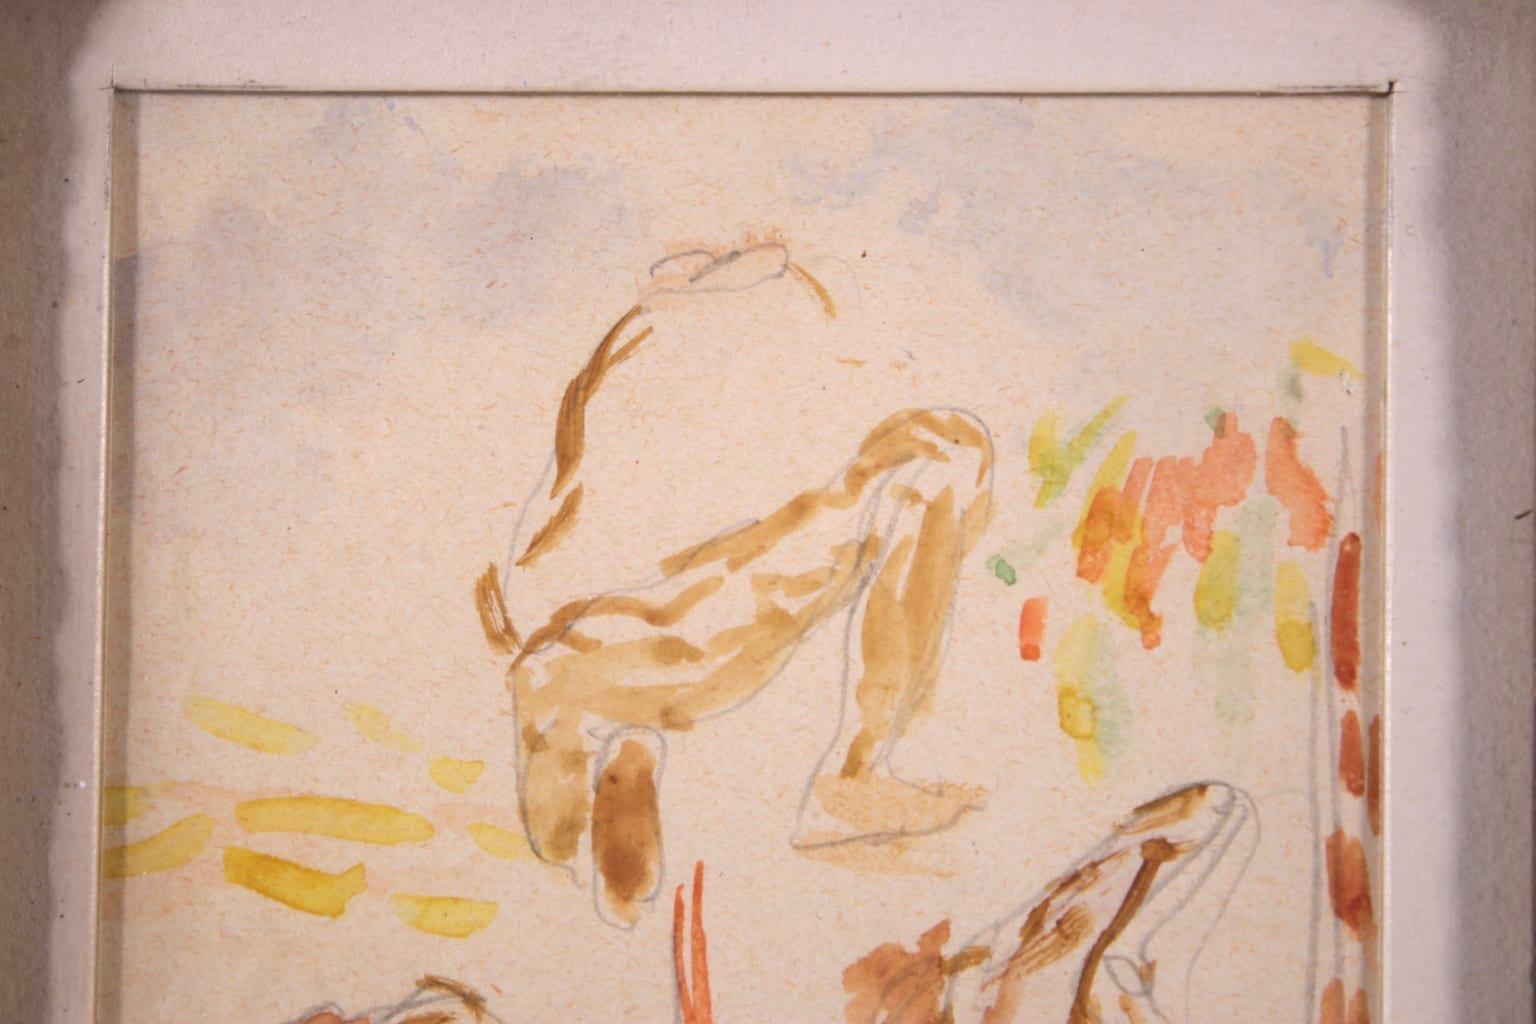 Etude de travailleurs - Impressionist Watercolor, Study of Figures - Henri Cross - Beige Portrait Painting by Henri Edmond Cross